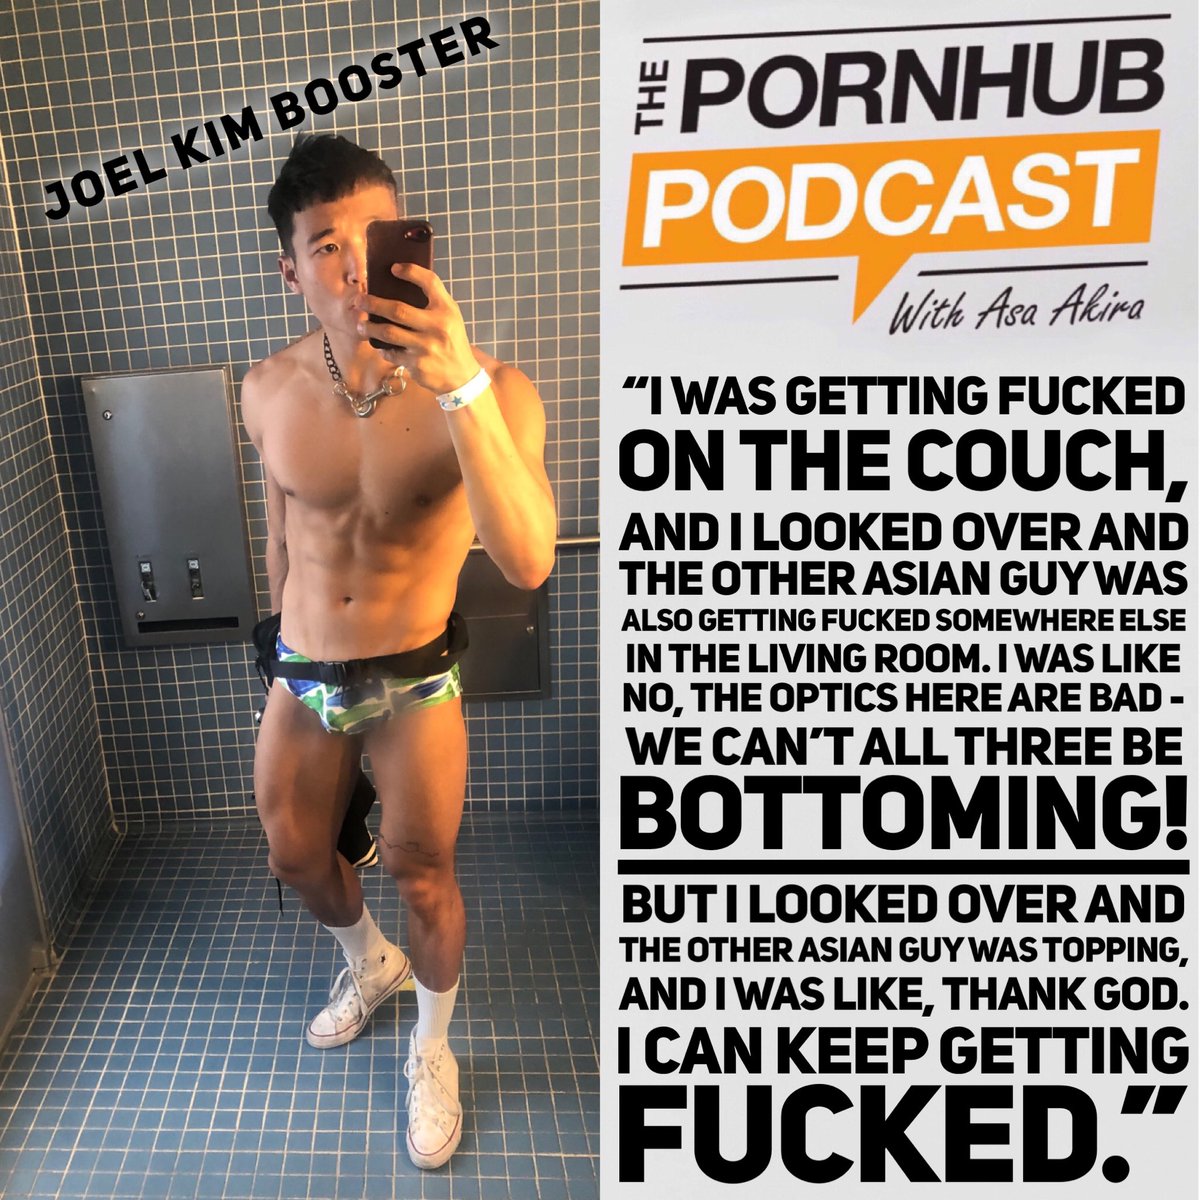 http://PornhubPodcast.com. 